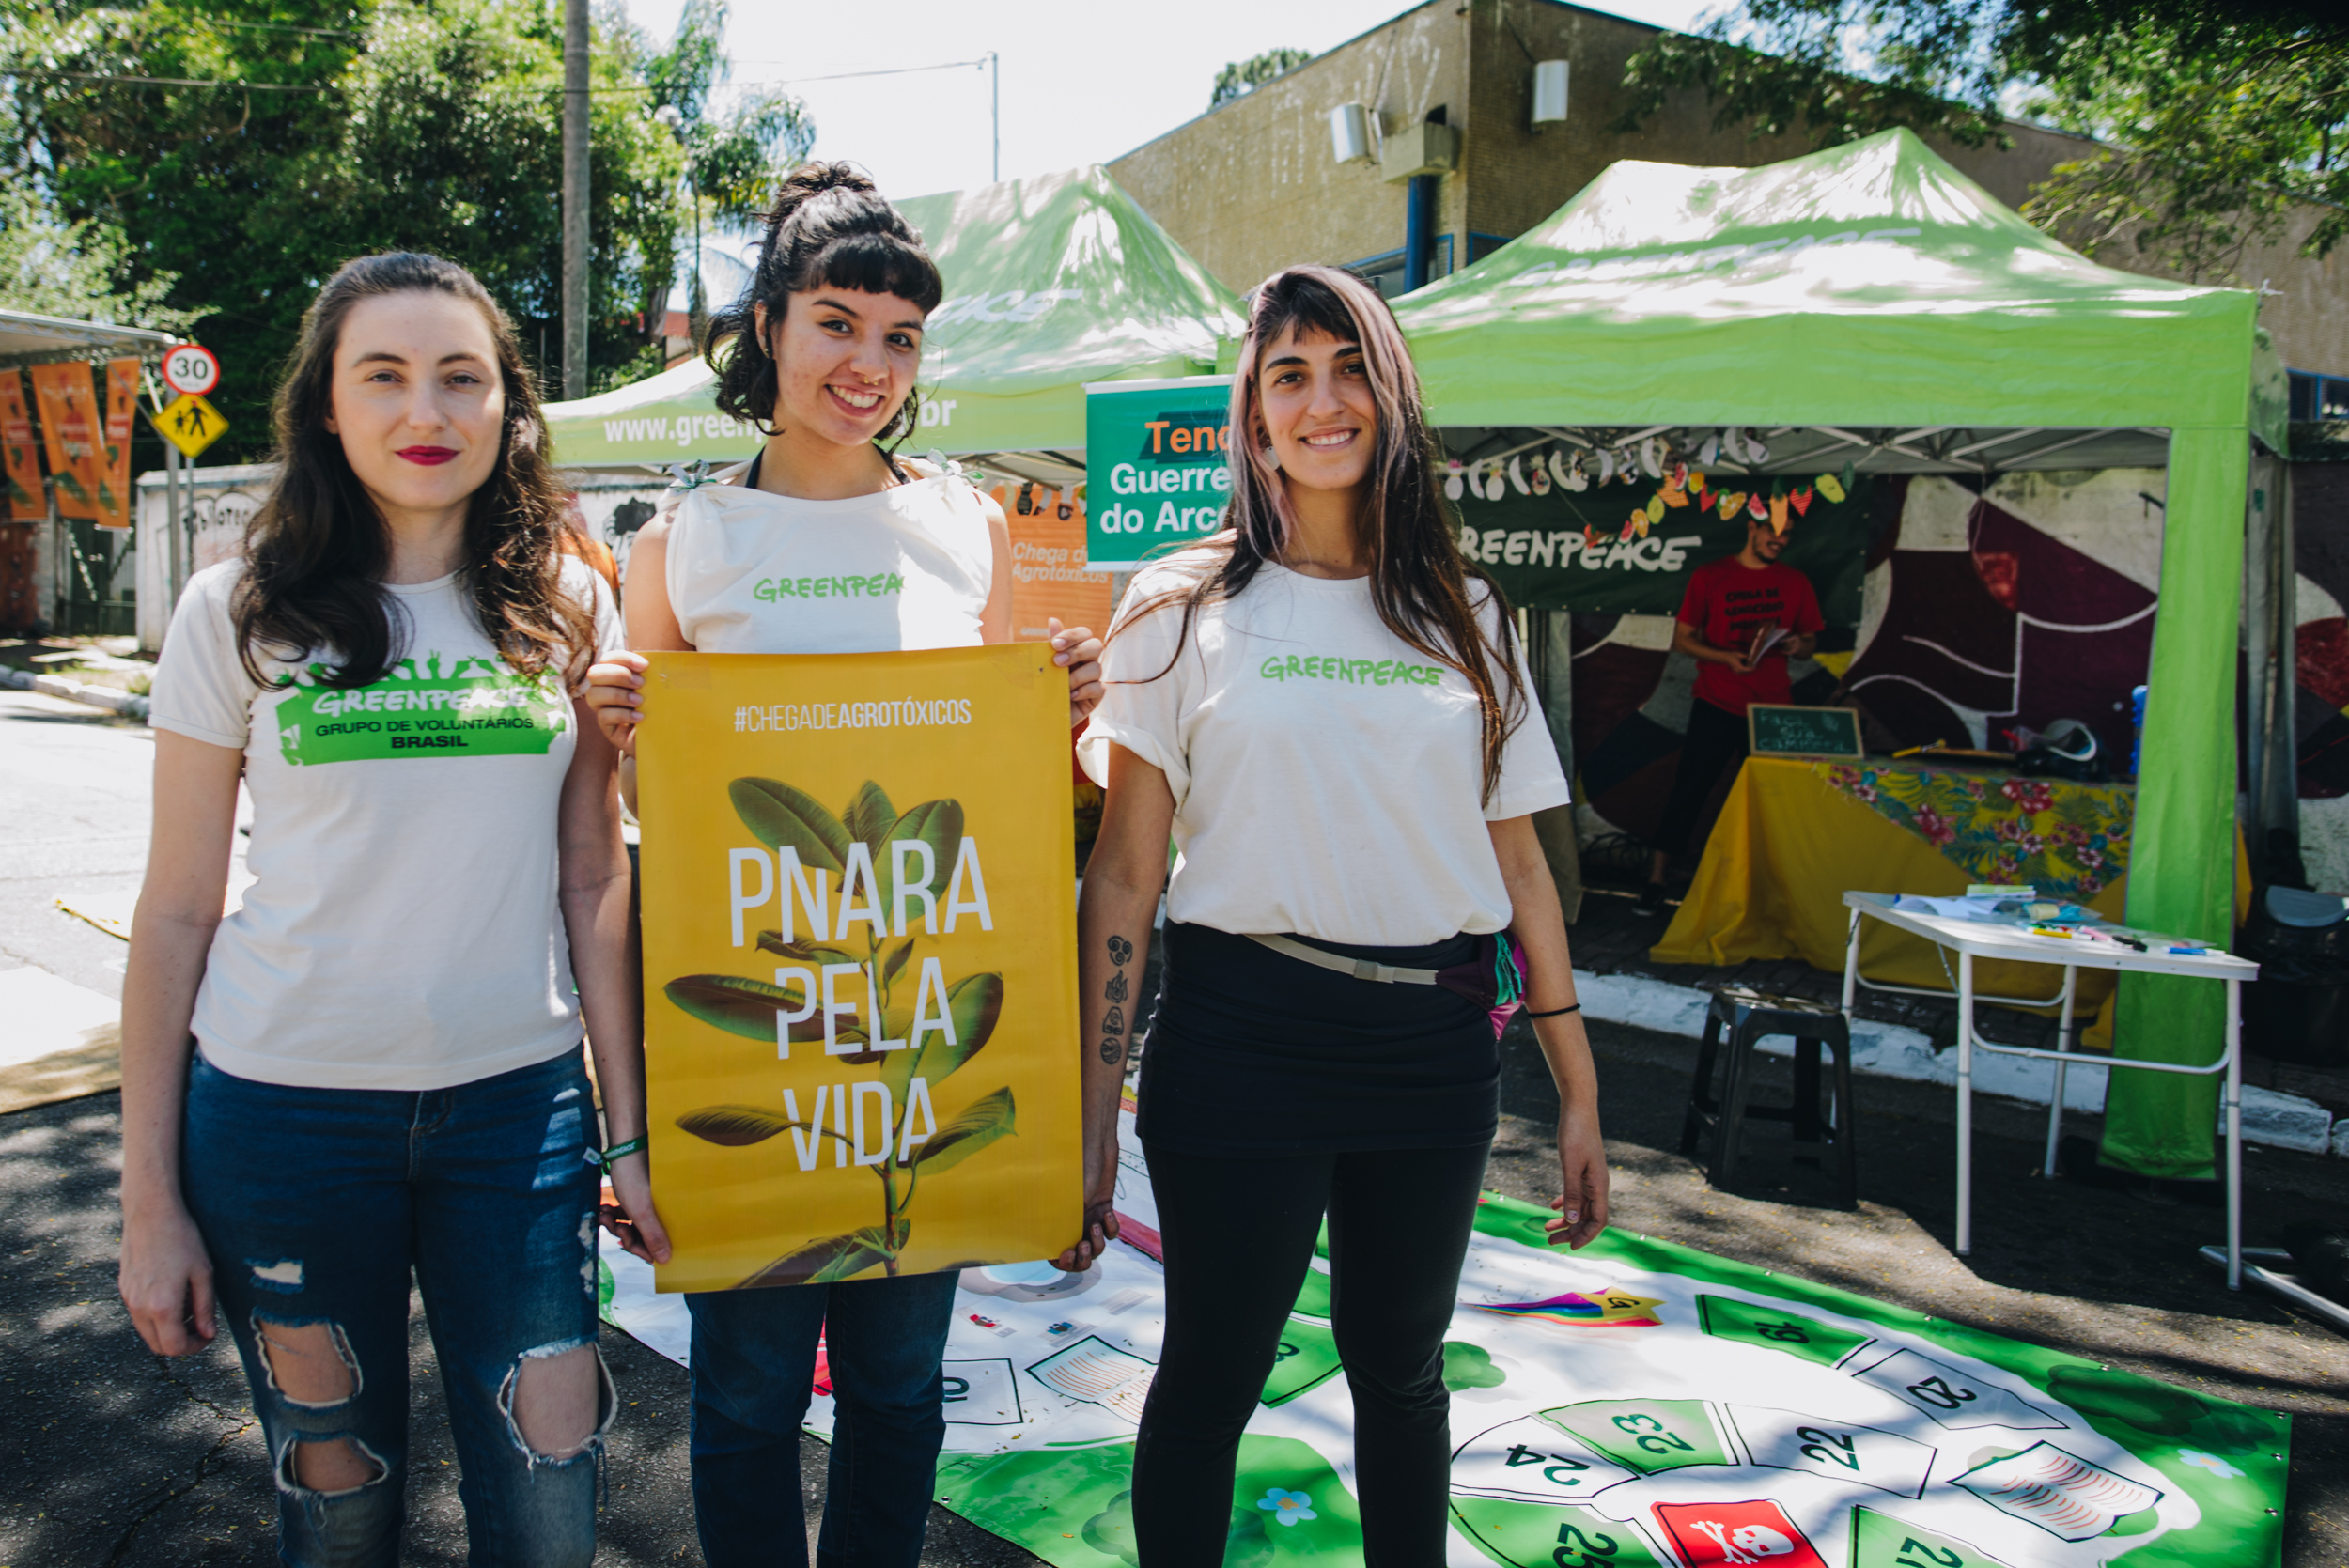 Mariana Belato, Grazielle Garcia e Natalia Ricci, voluntárias do Greenpeace